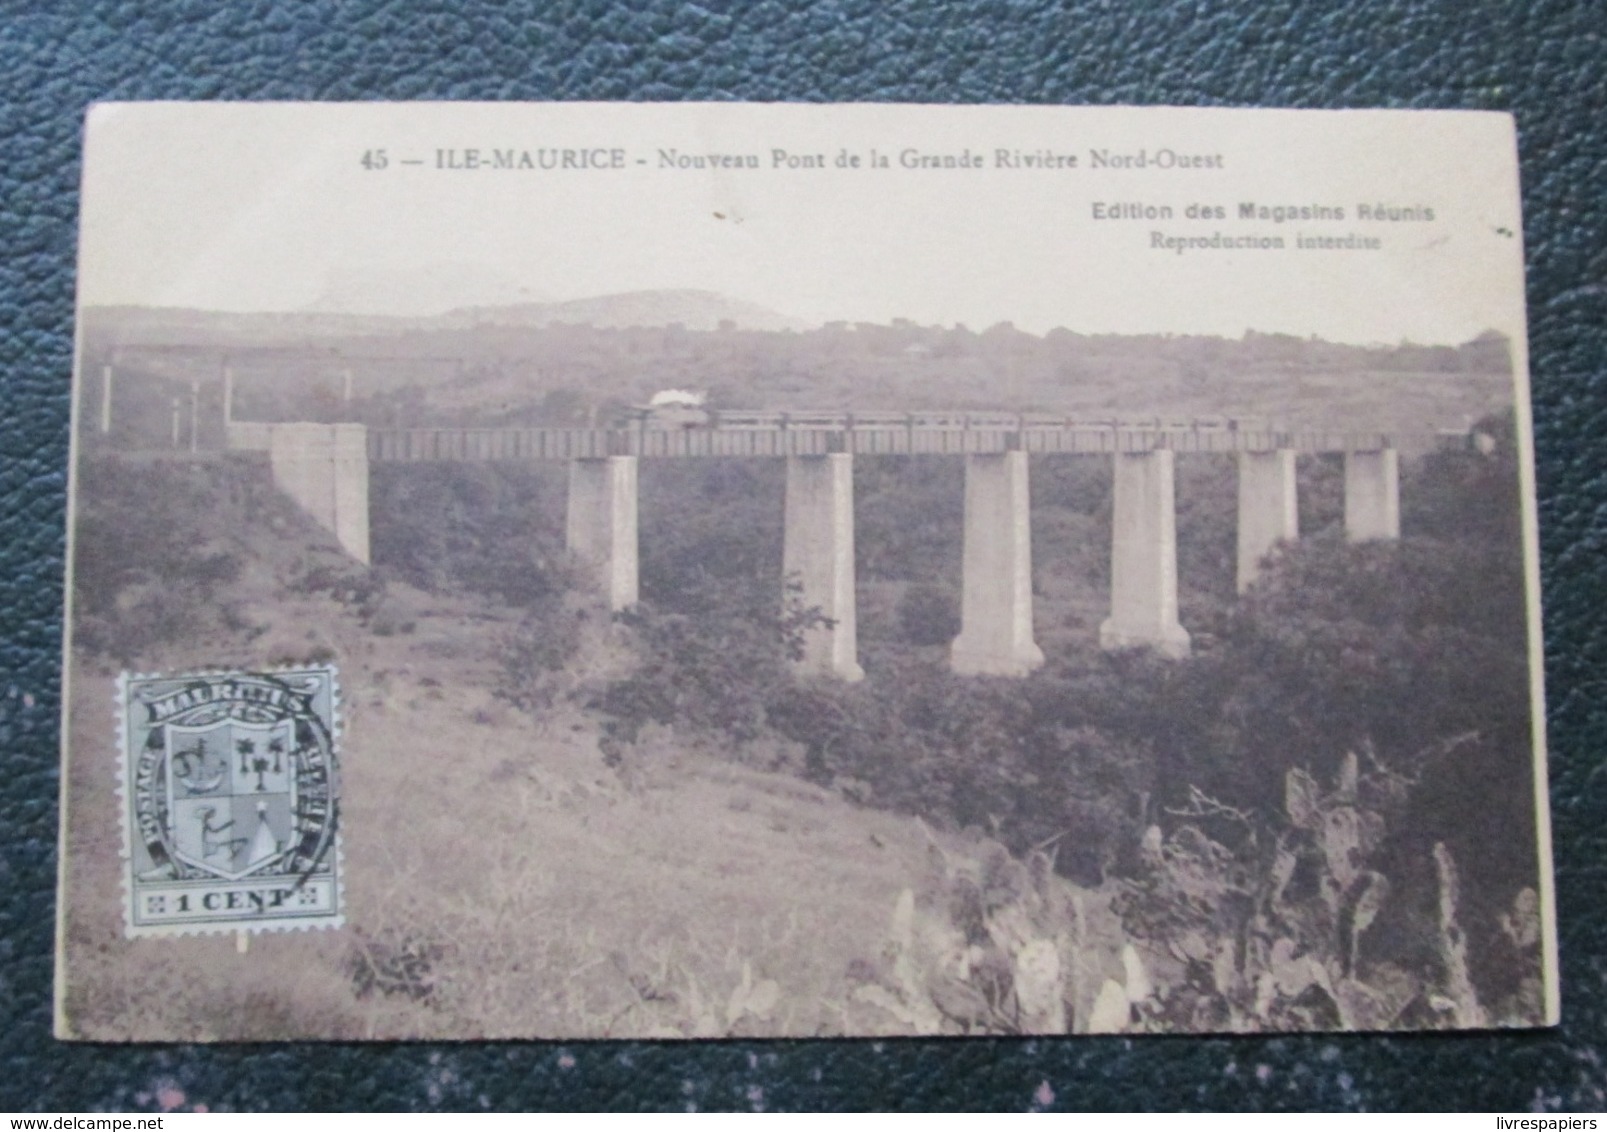 Maurice Ile Nouveau Pont  De La Grande Riviere   Cpa Timbée Mauritius - Mauritius